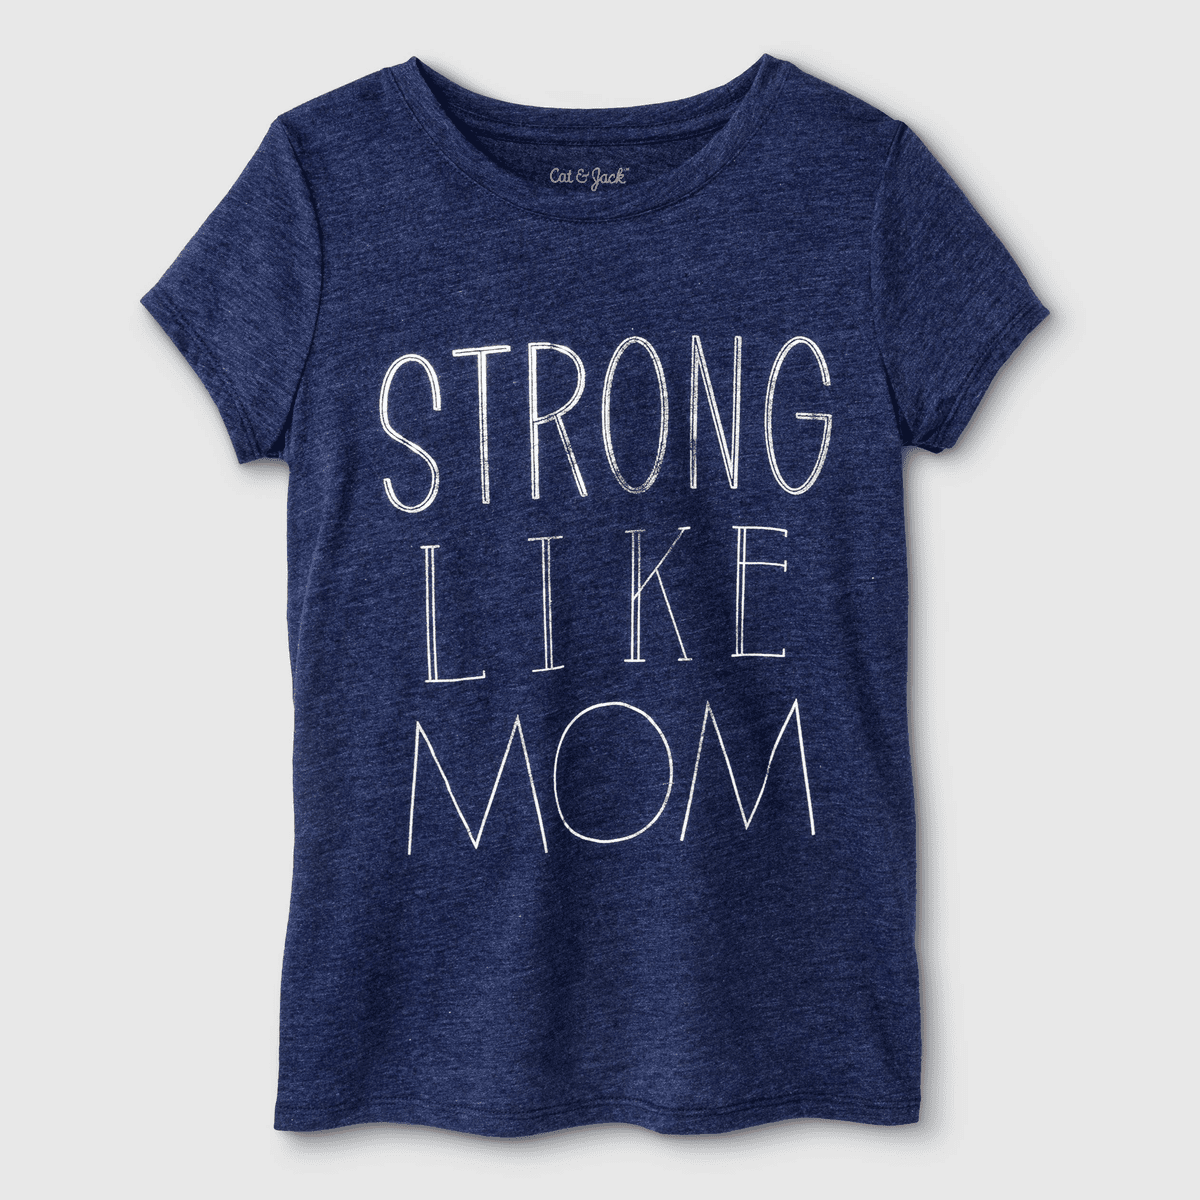 "Strong Like Mom" Shirt